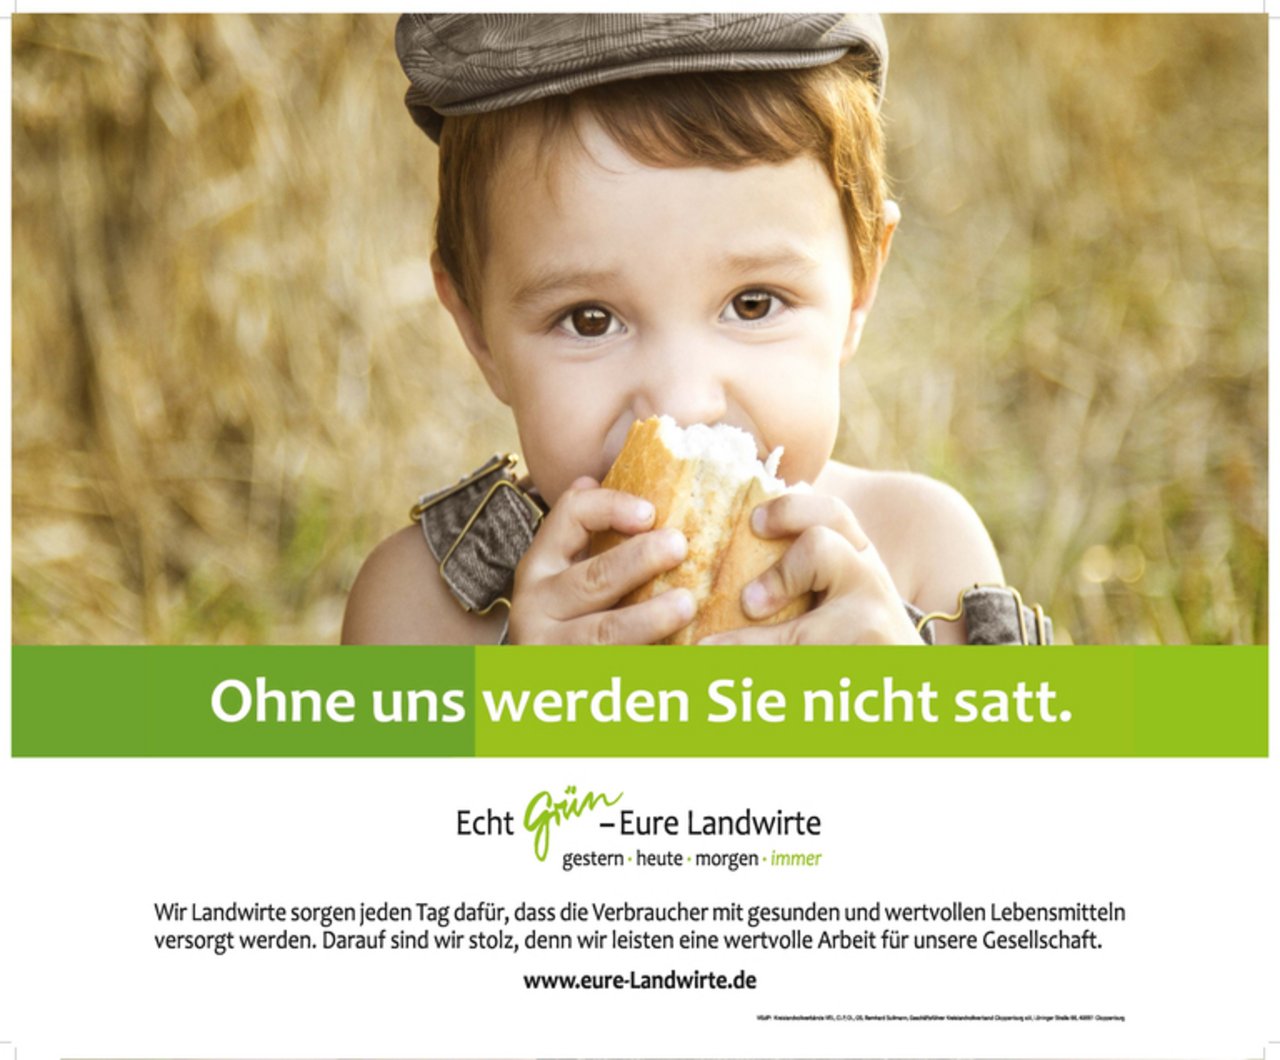 Die Imagekampagne soll der Gesellschaft die Bedeutung der Landwirte vor Augen führen. (Bild www.eure-landwirte.de)